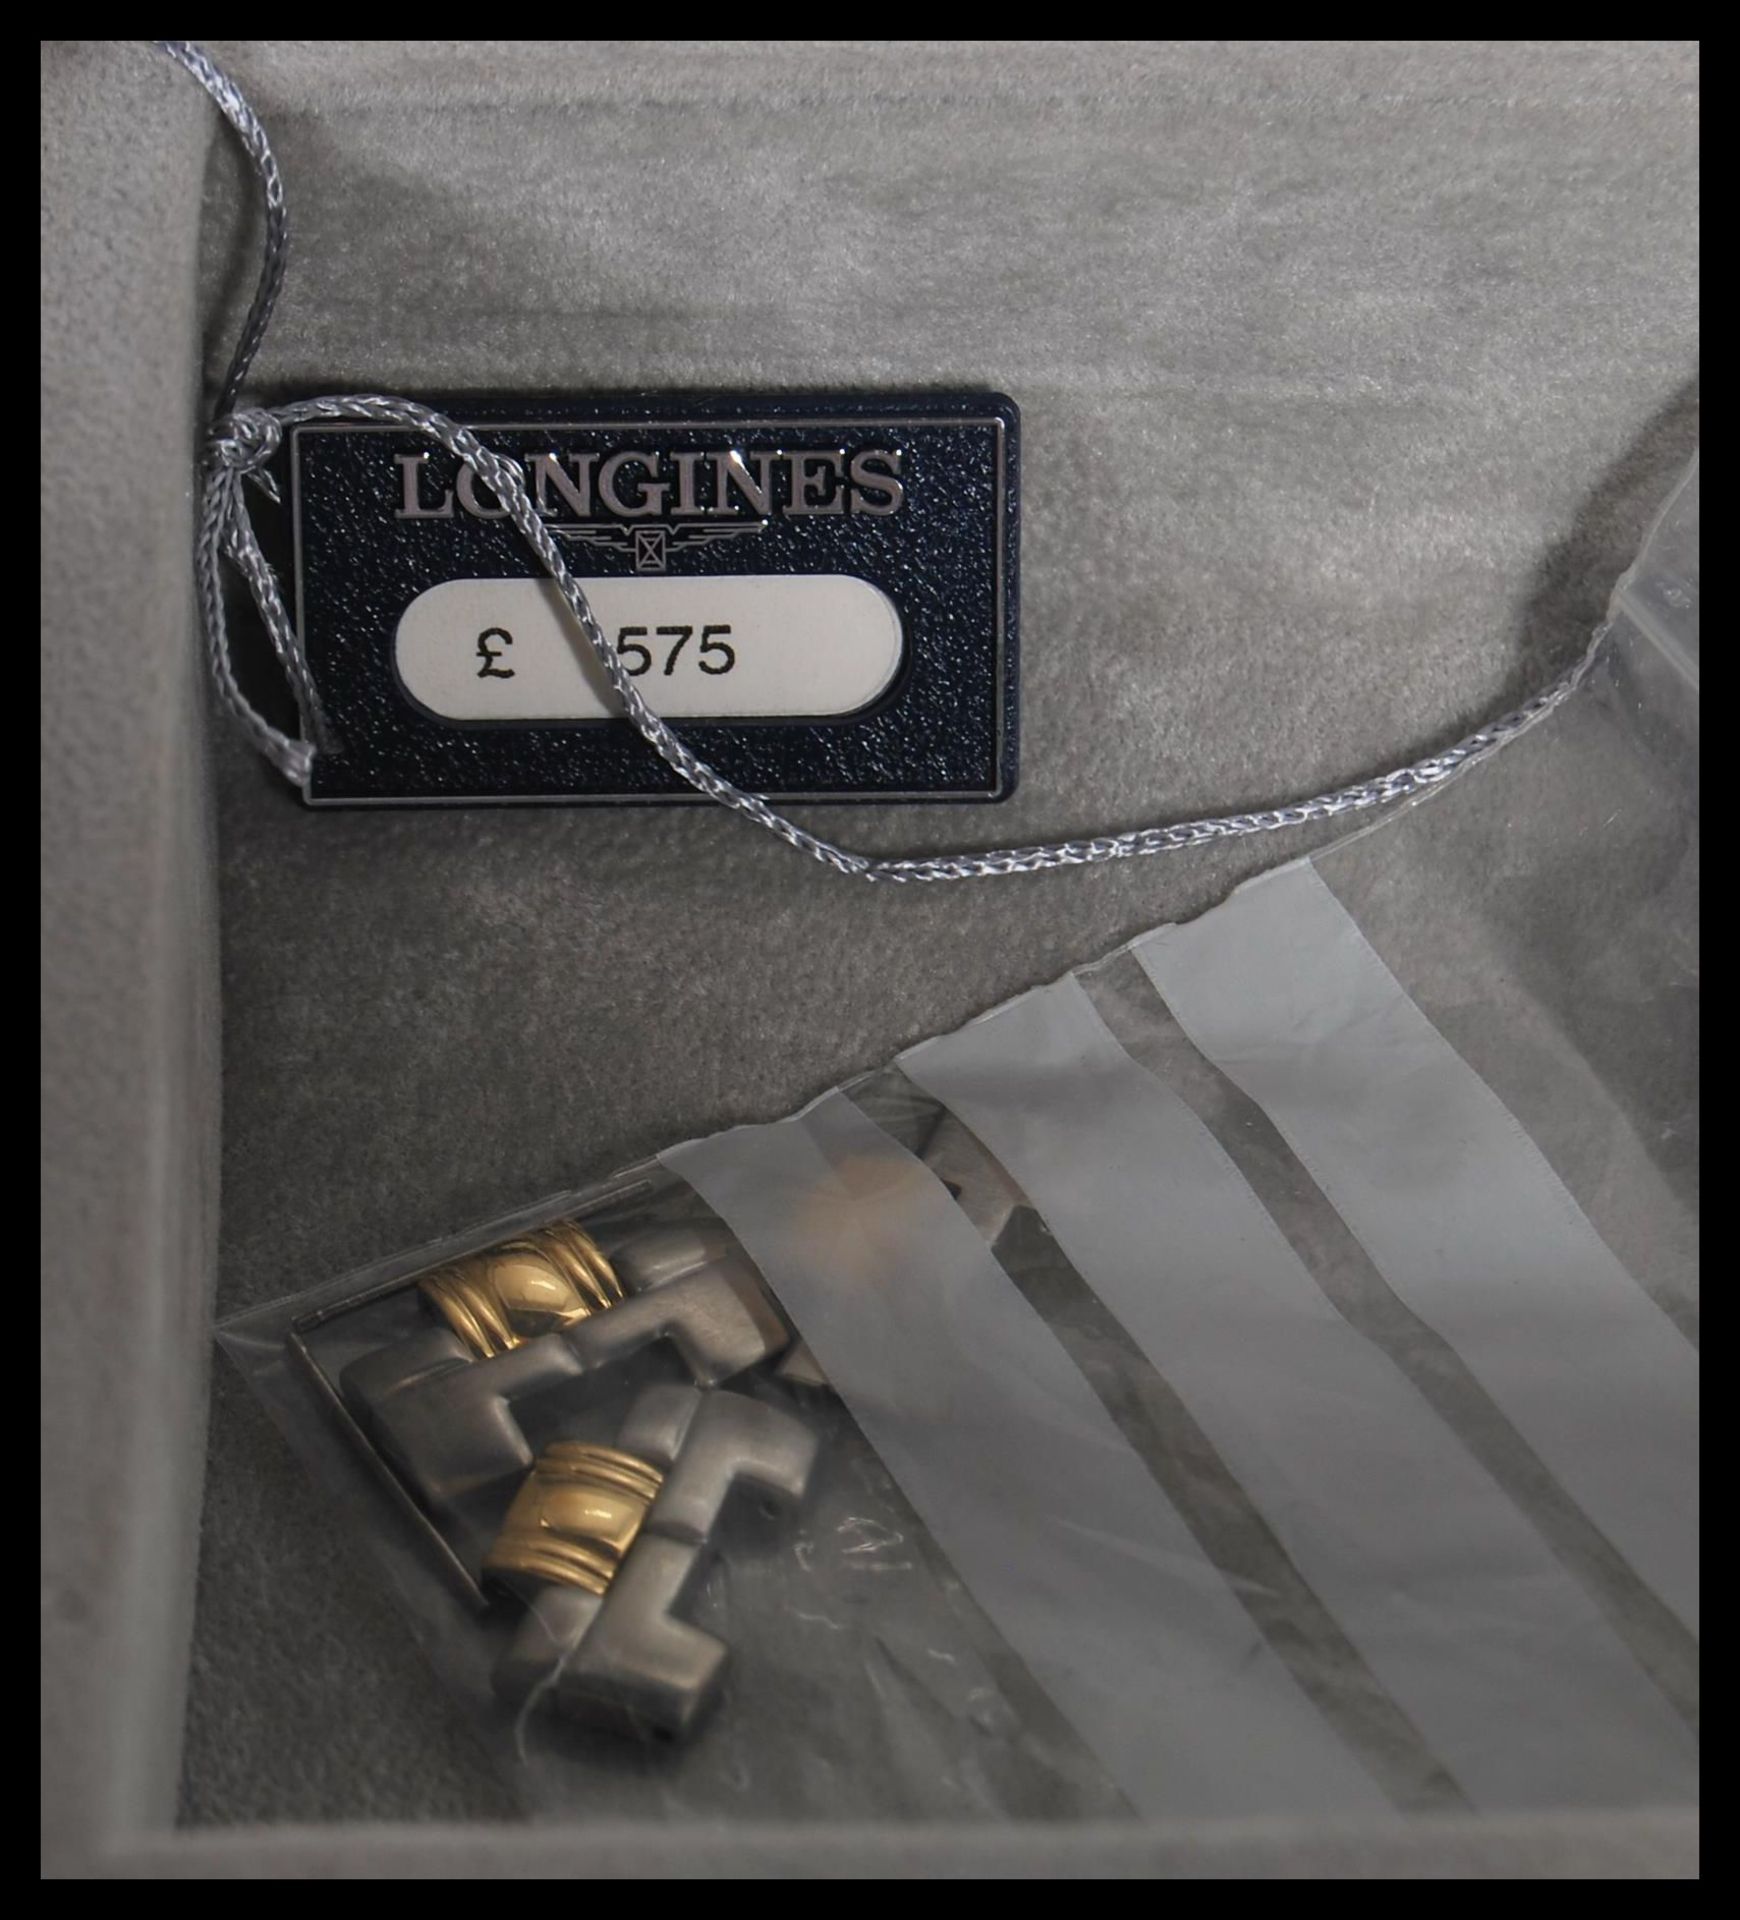 Longines, Flagship, Bi-colour bracelet watch, no. 28163672, current model Movement L5 651 3. - Image 5 of 7